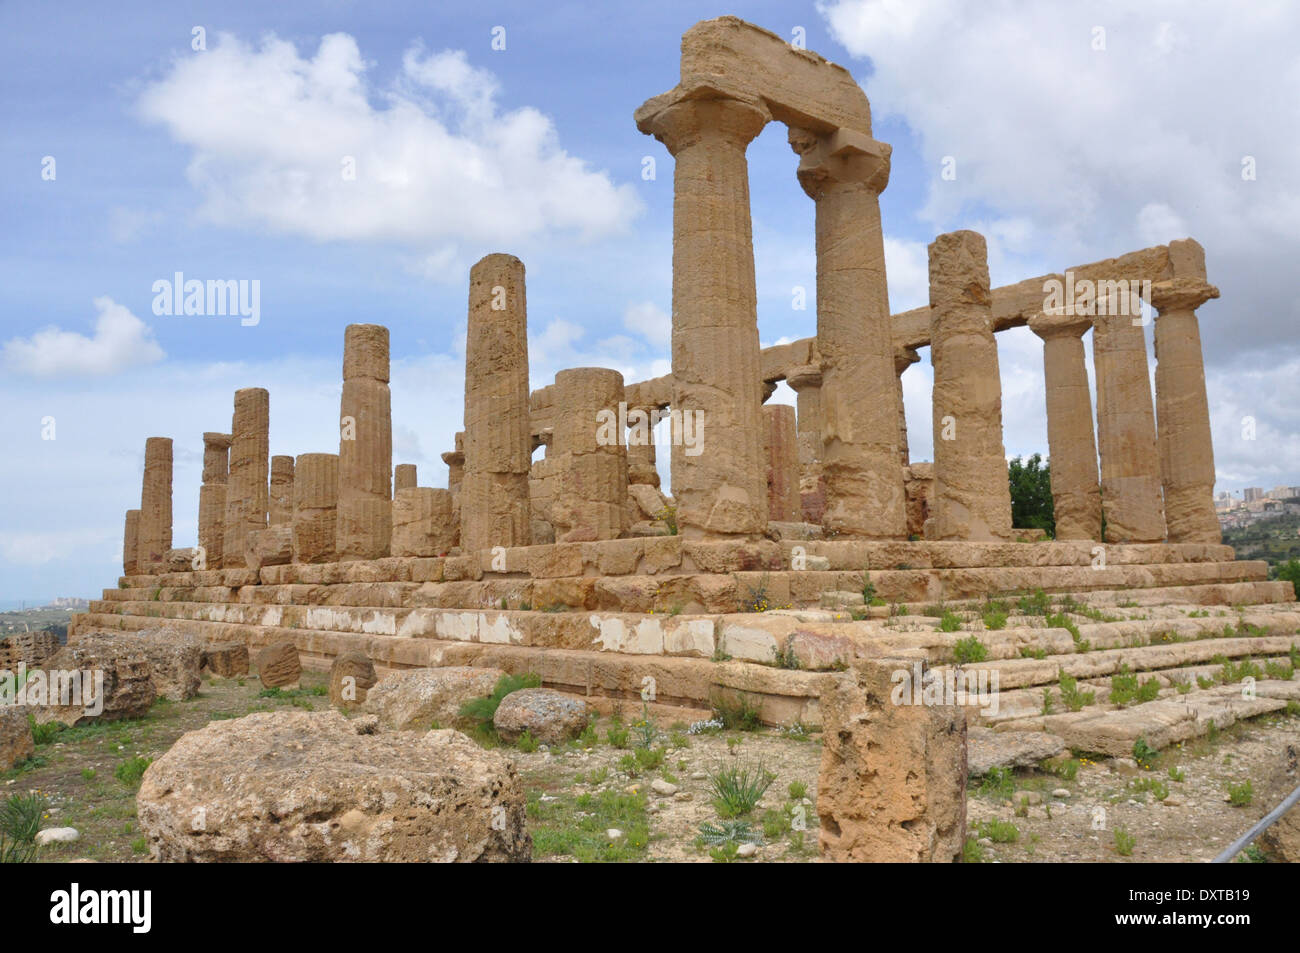 Temple of Juno, Valle dei Templi, Agrigento, Sicily Stock Photo